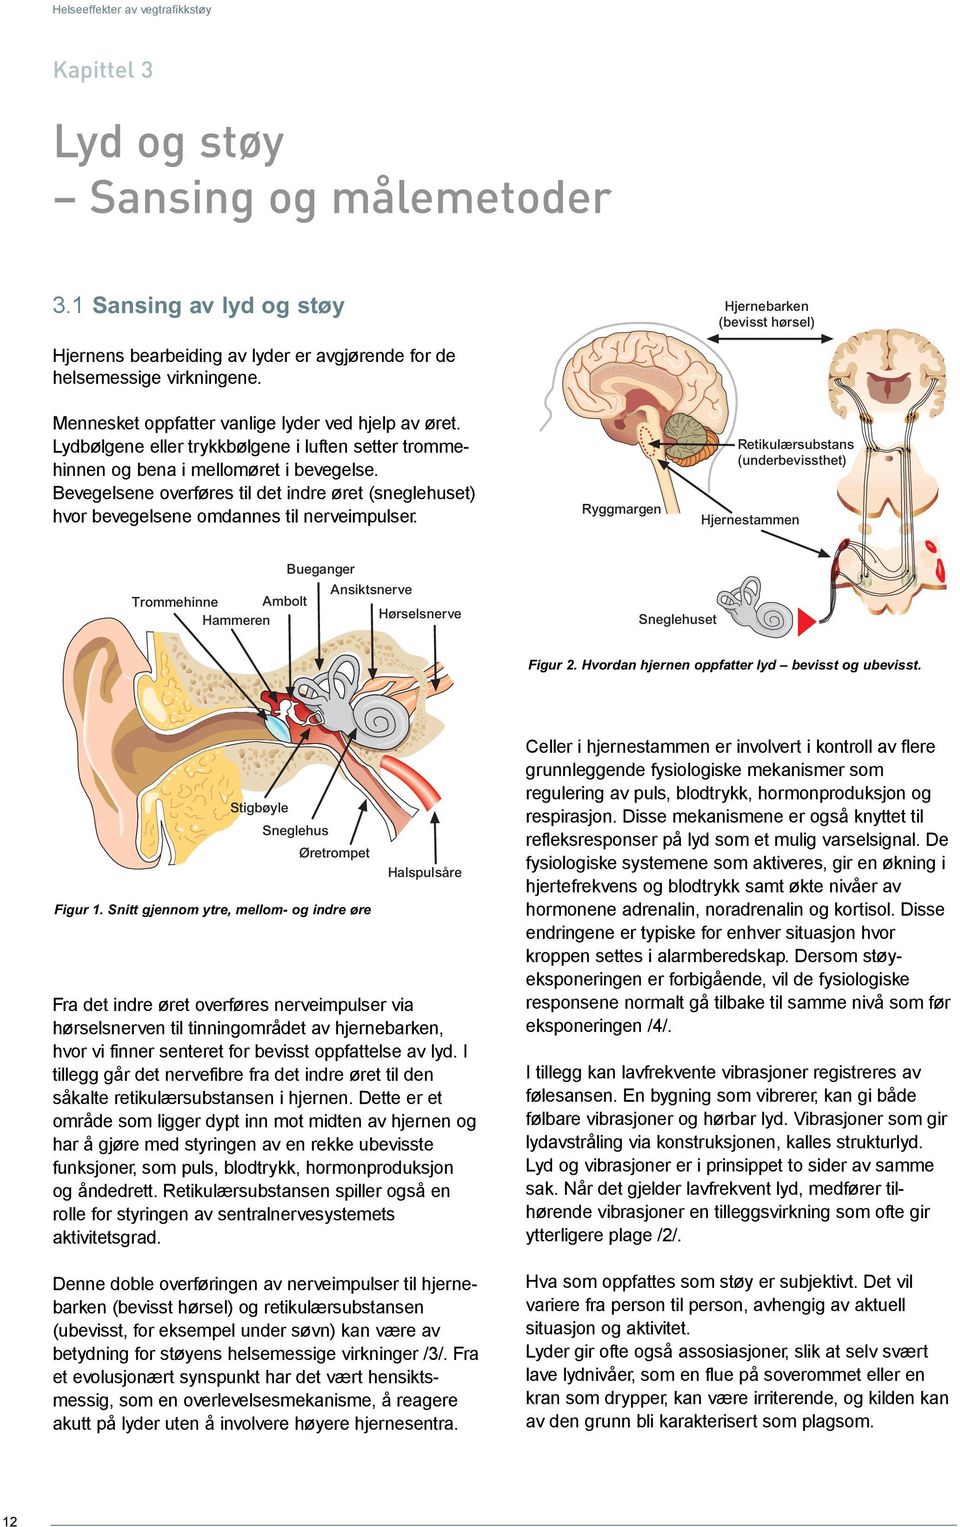 Bevegelsene overføres til det indre øret (sneglehuset) hvor bevegelsene omdannes til nerveimpulser.